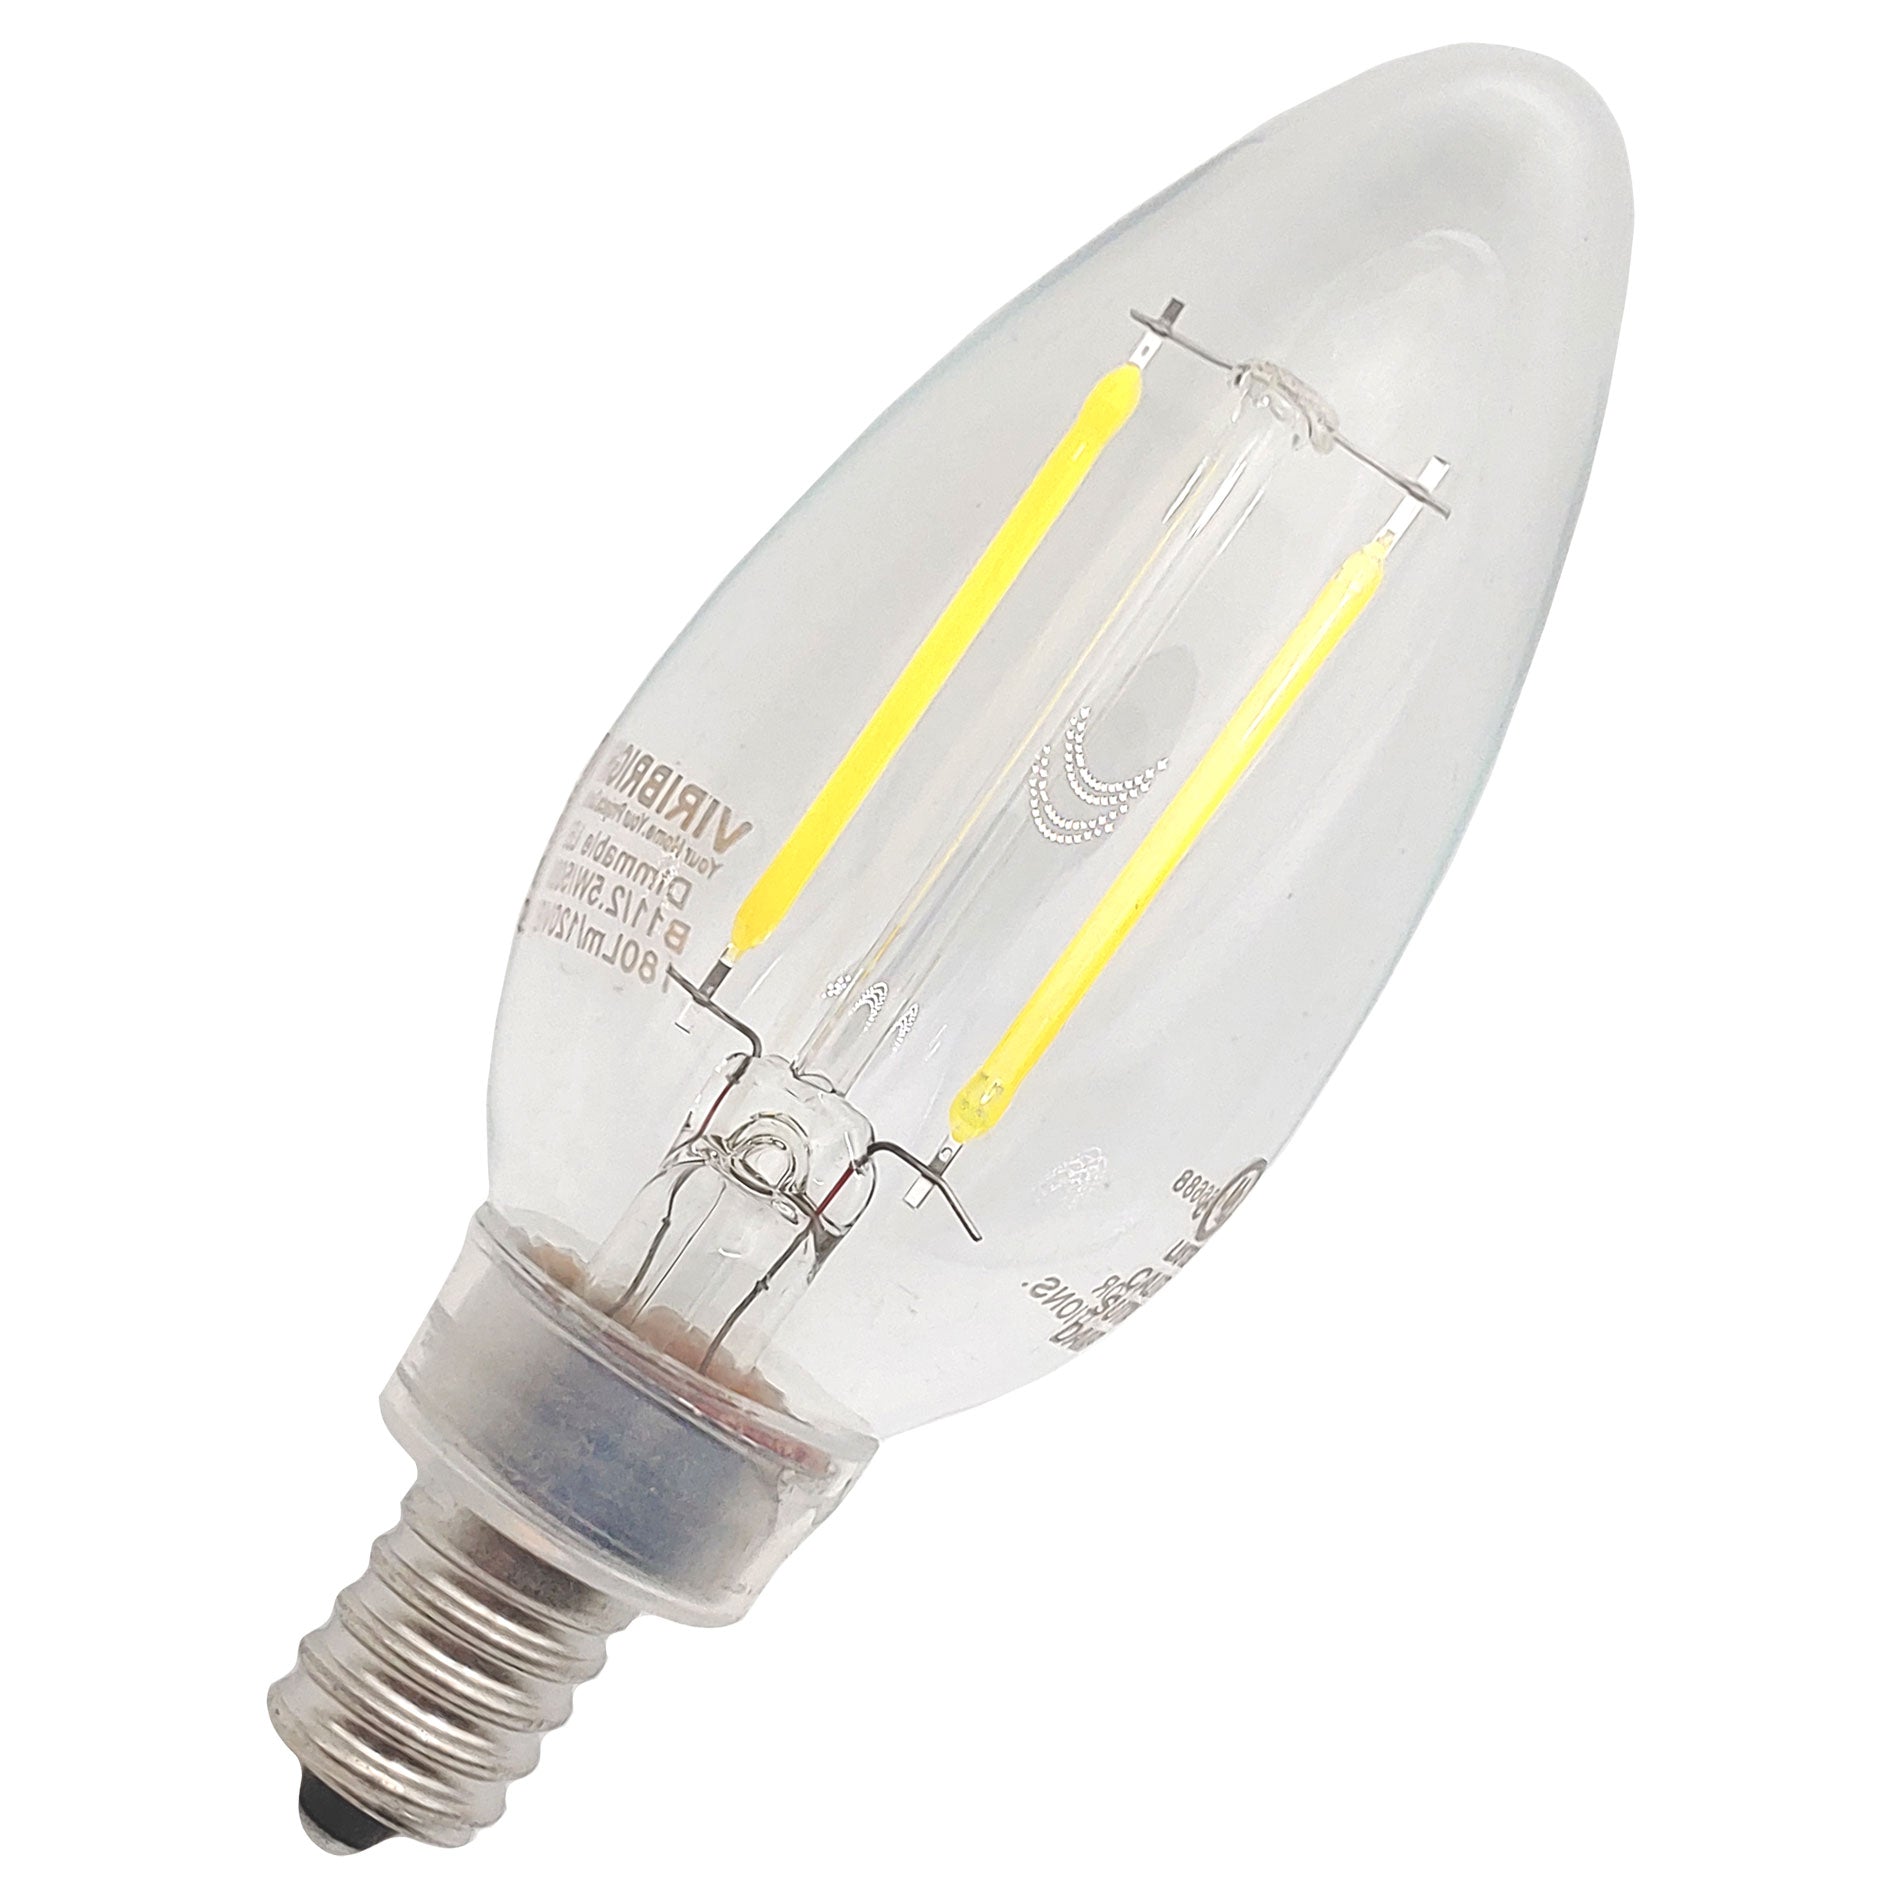 B11 LED bulb